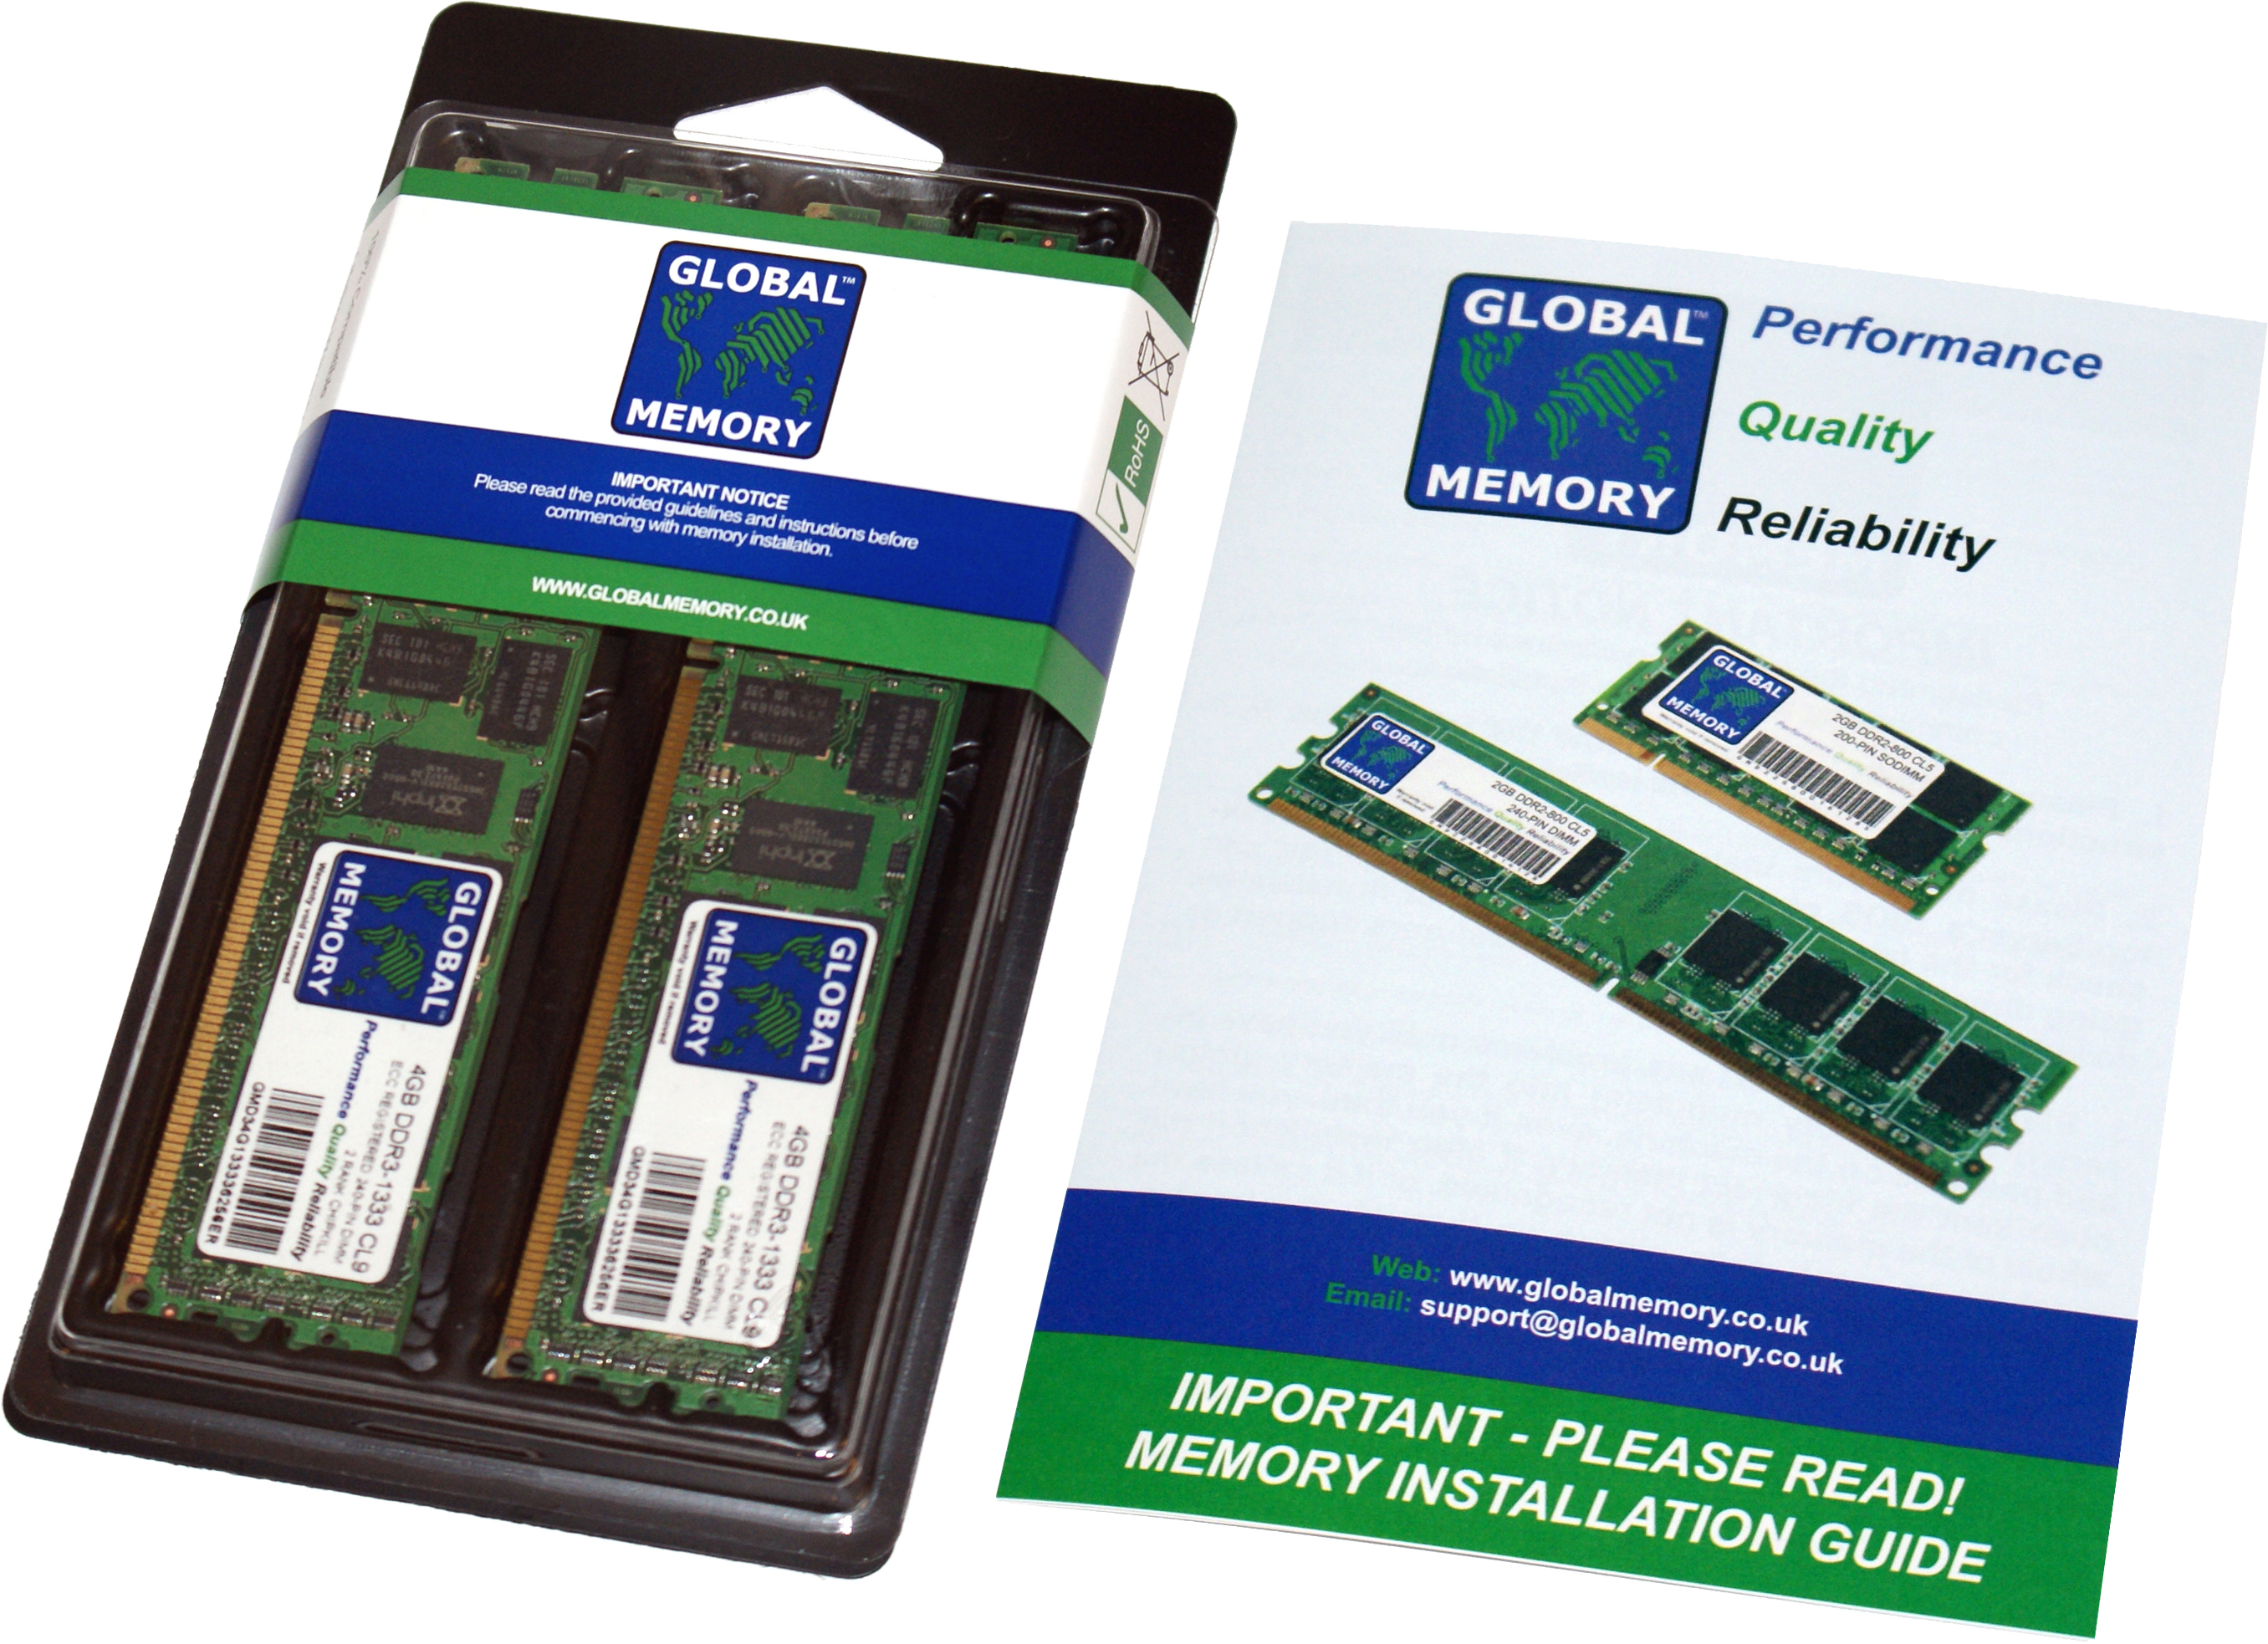 64GB (2 x 32GB) DDR4 2666MHz PC4-21300 288-PIN ECC REGISTERED DIMM (RDIMM) MEMORY RAM KIT FOR HEWLETT-PACKARD SERVERS/WORKSTATIONS (4 RANK KIT CHIPKILL)